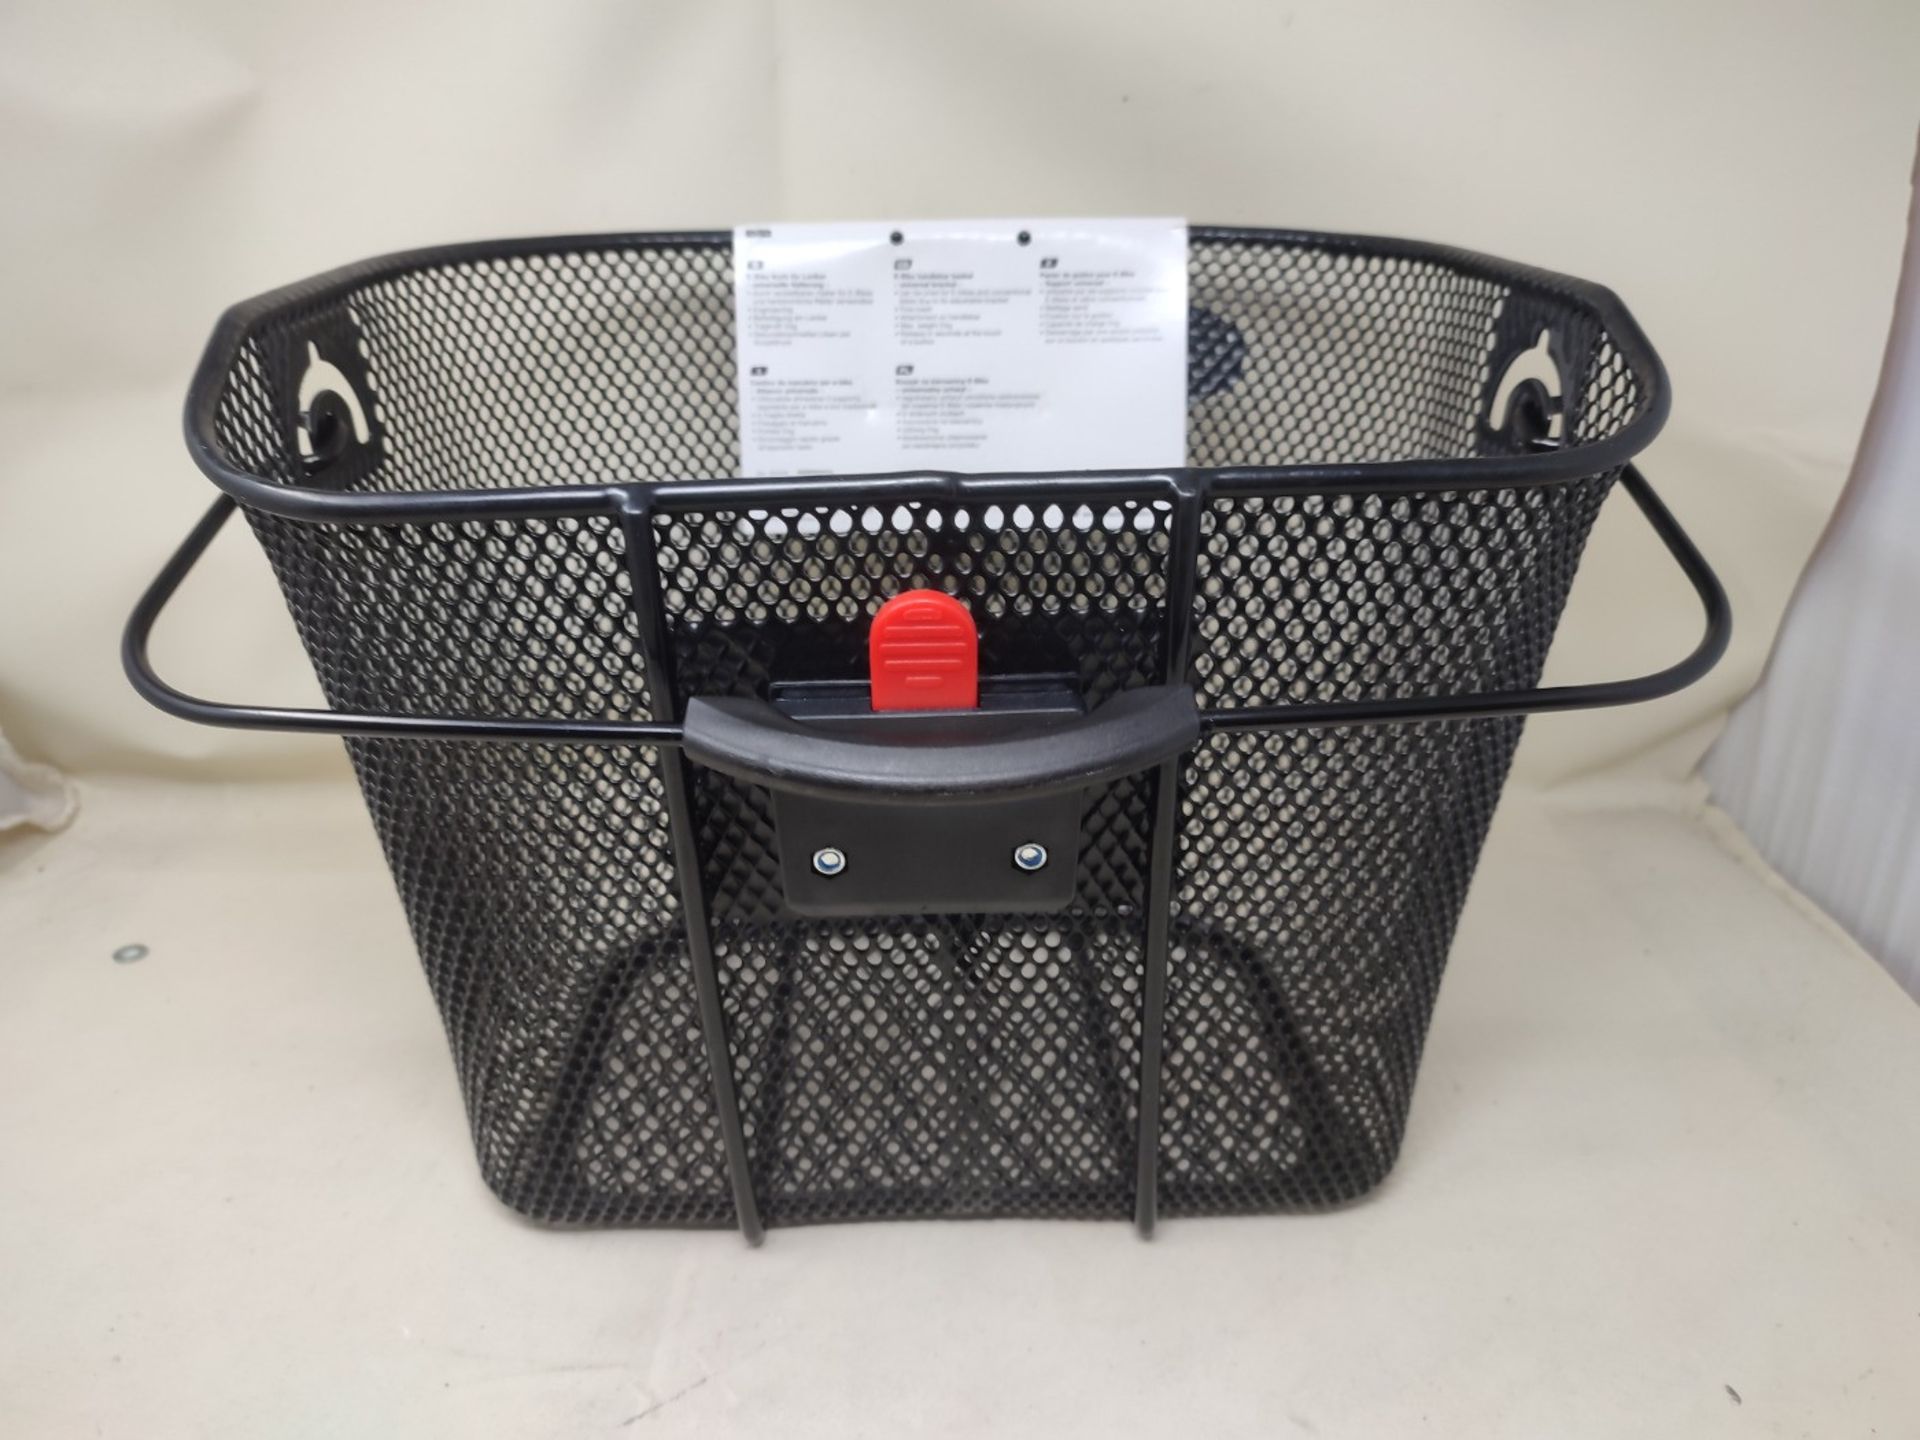 Fischer Unisex - Adult's Korb E-Bike Basket, Black, Normal - Image 3 of 3